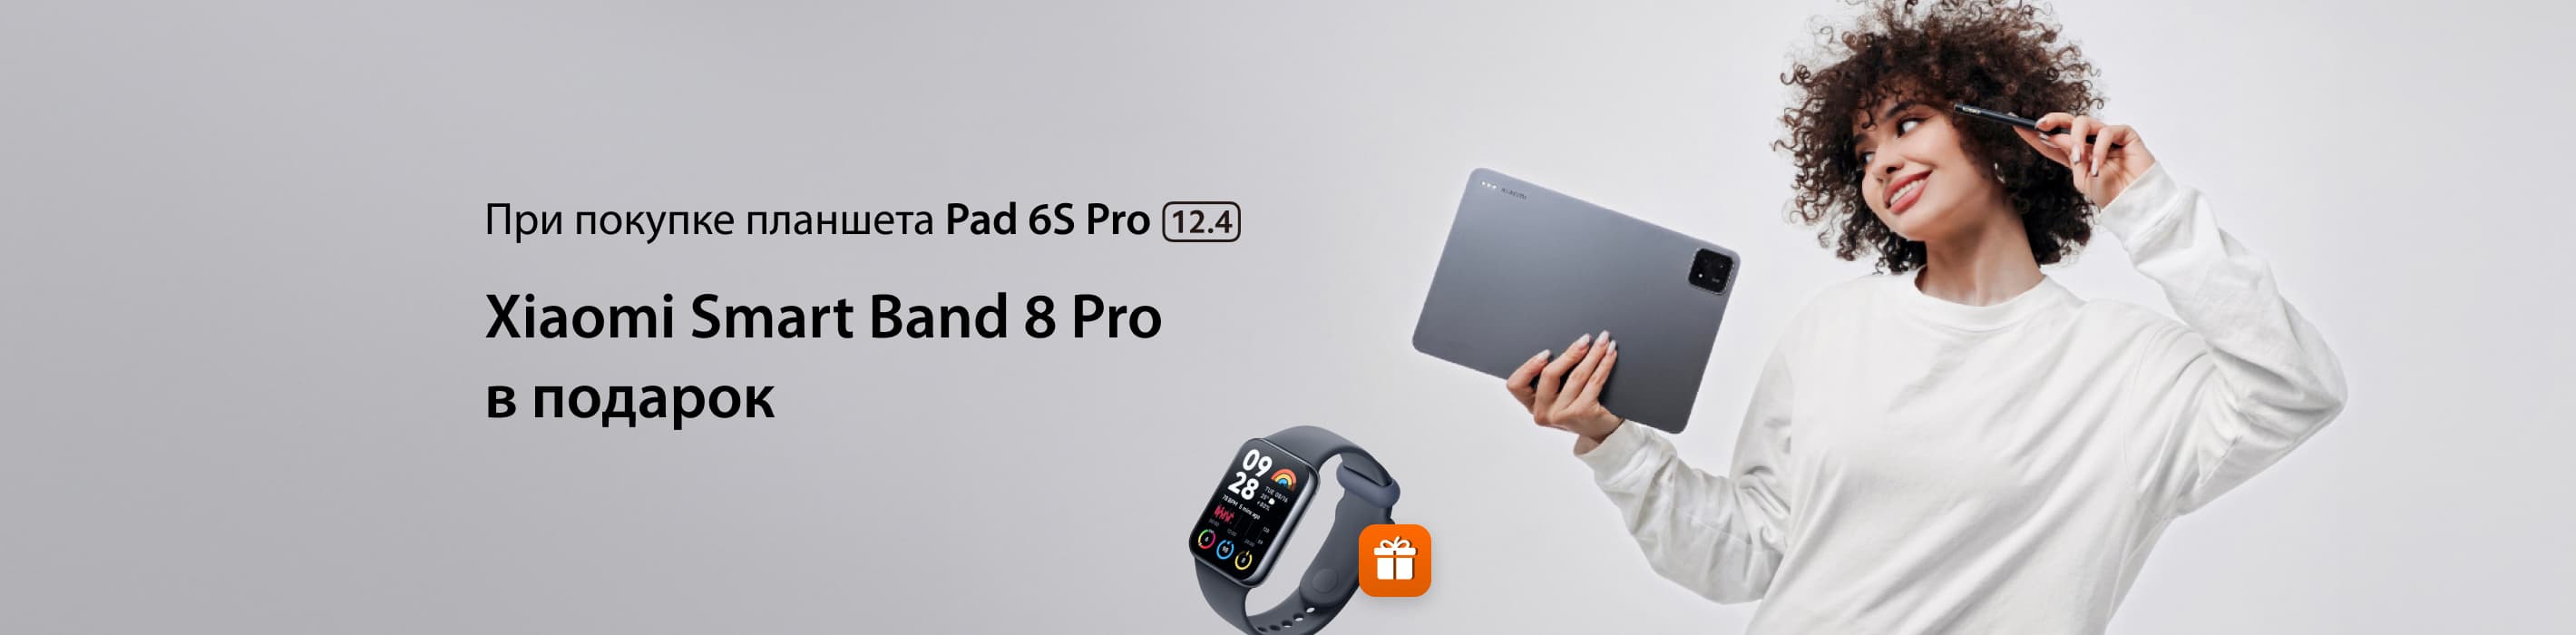 Получайте фитнес-браслет при покупке планшета Pad 6S Pro